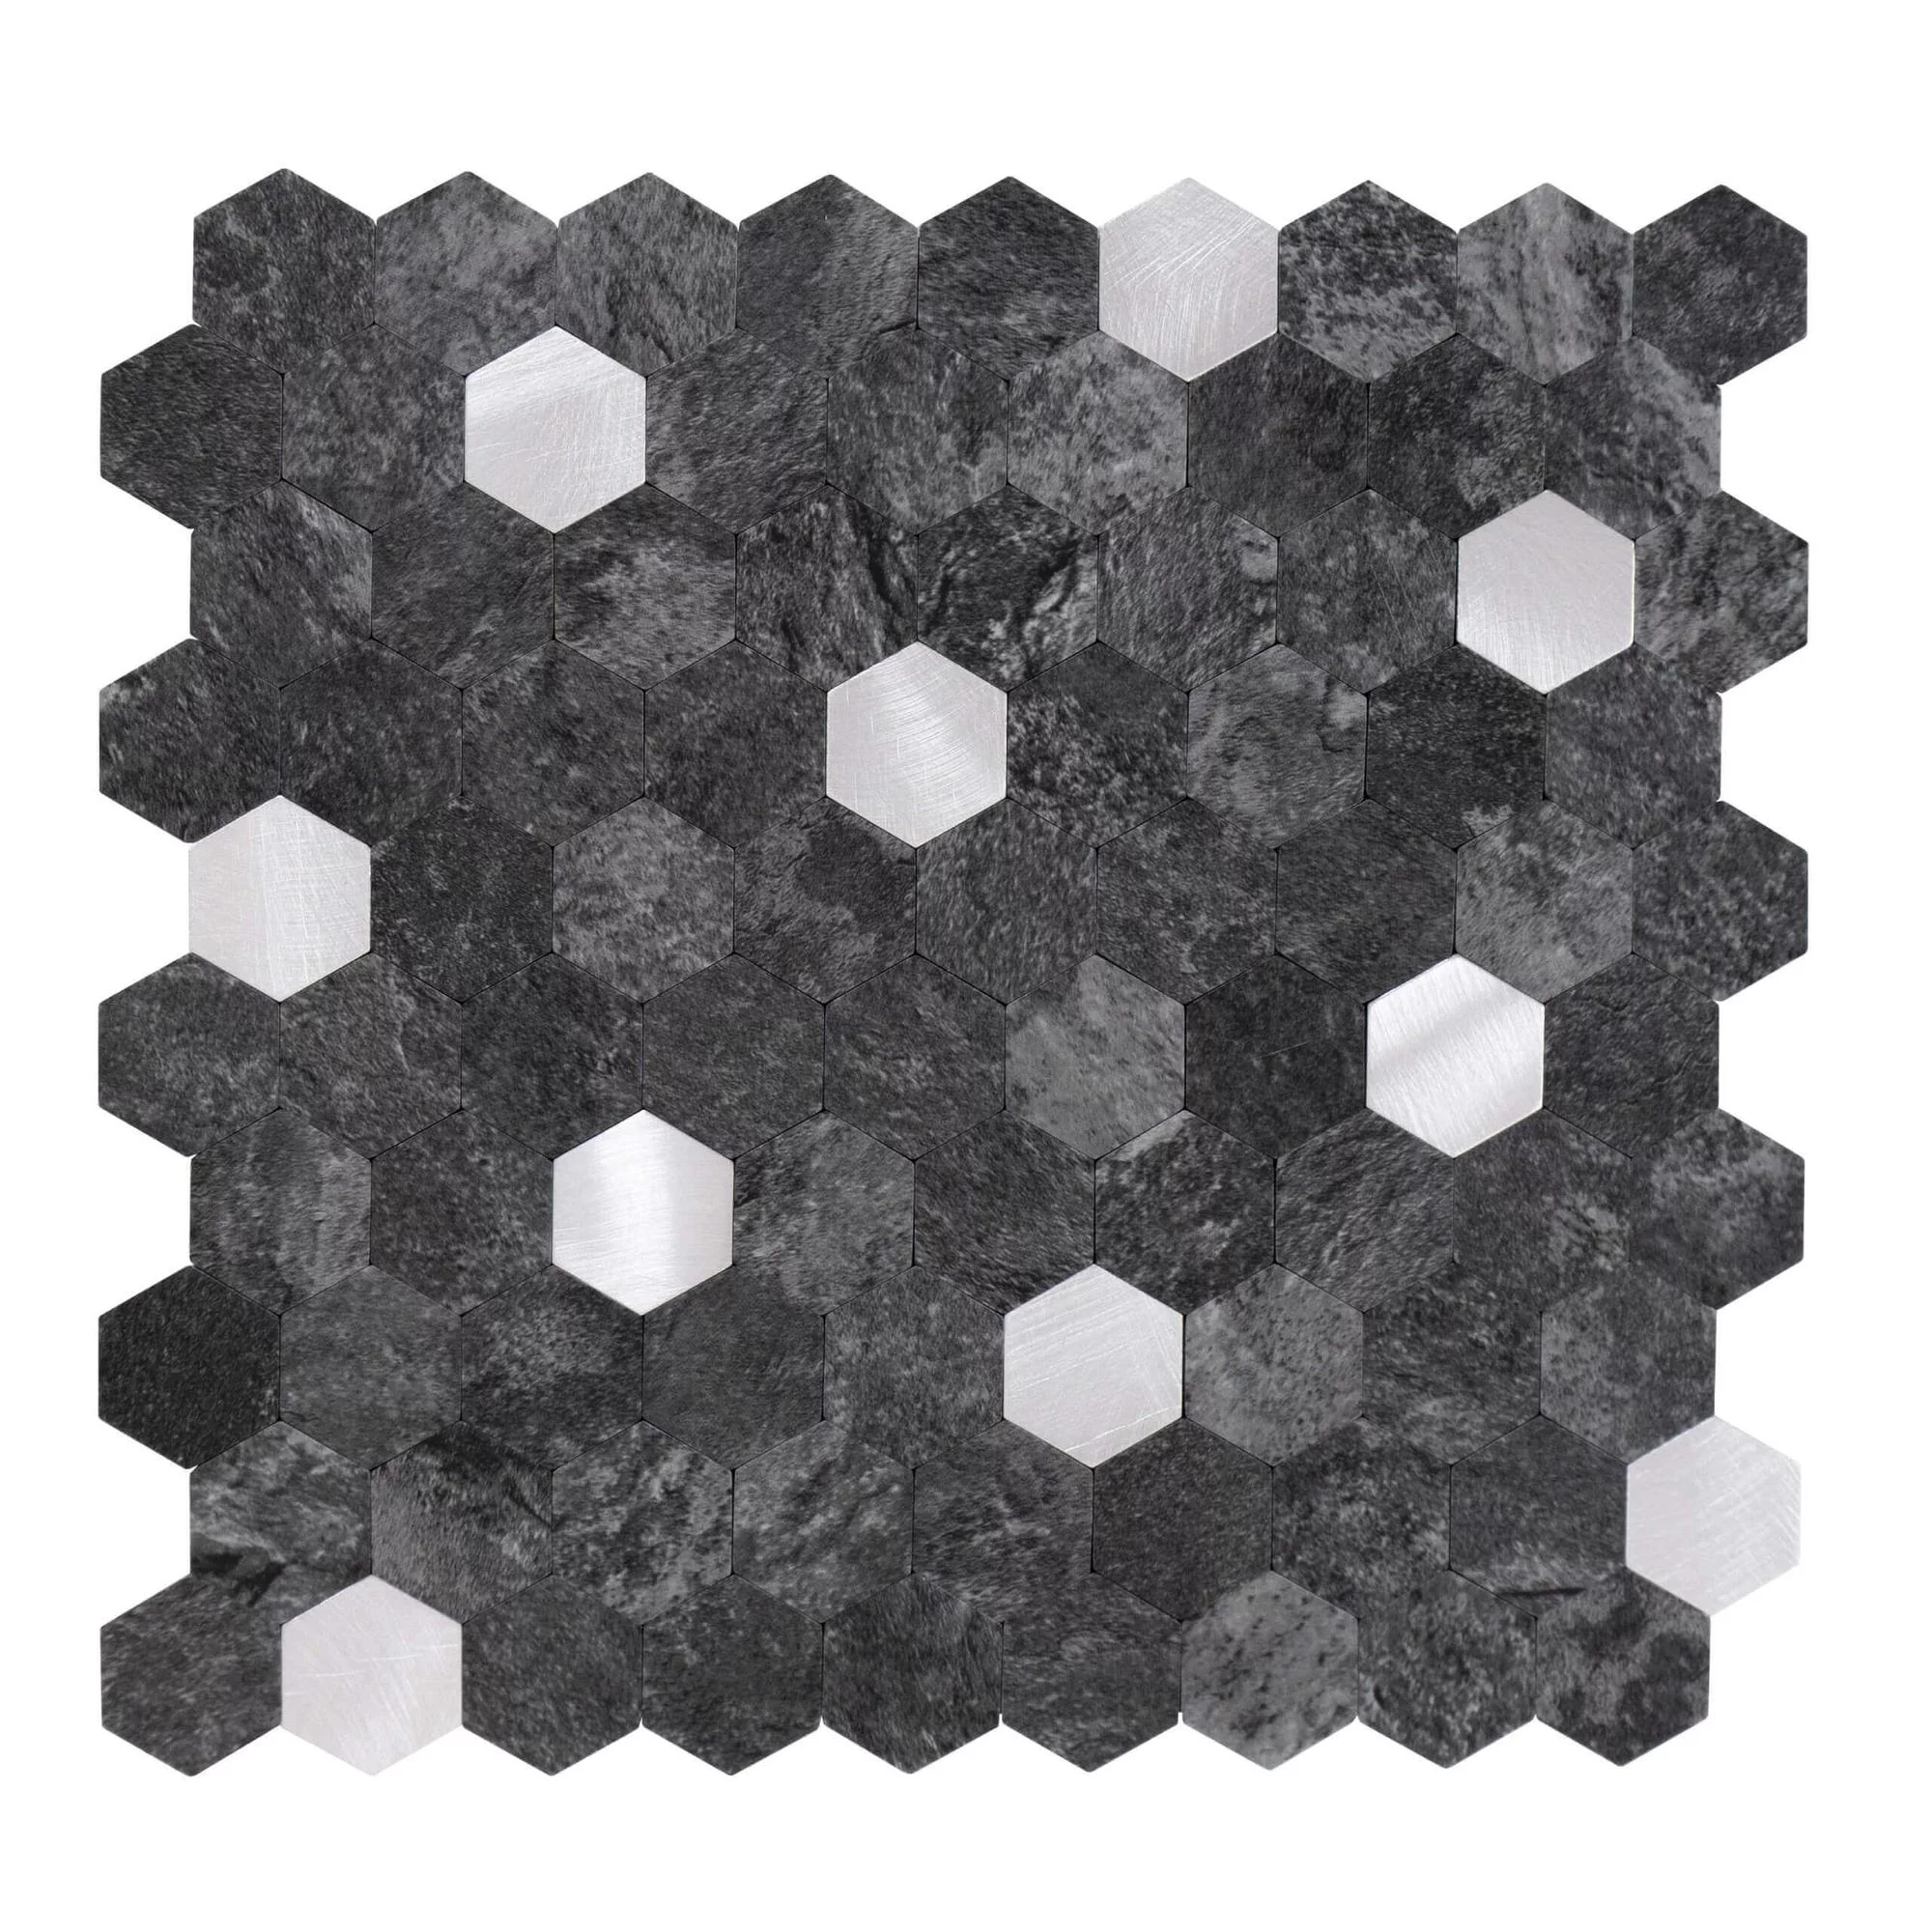 selbstklebende-fliesen-hexagon-form-0.88m².-11-stueck-steinoptik-anthrazit-silber